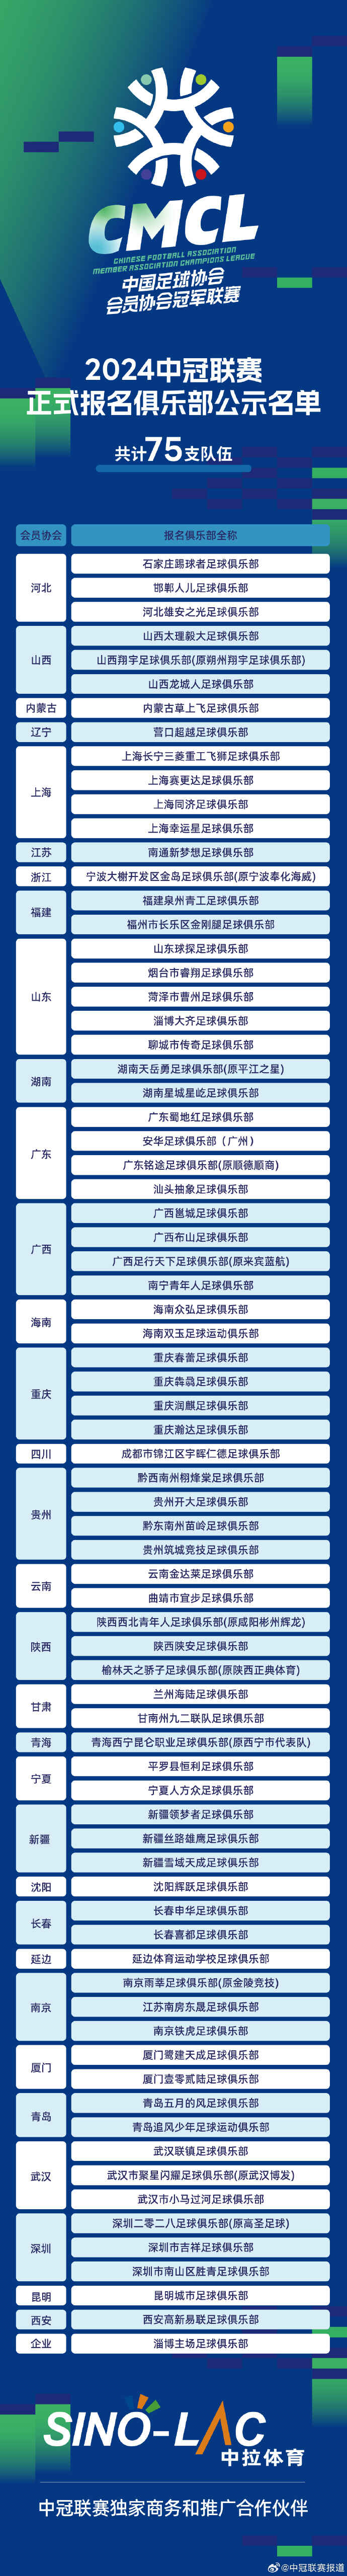 75家俱乐部正式报名参加中冠联赛 广东7队在列